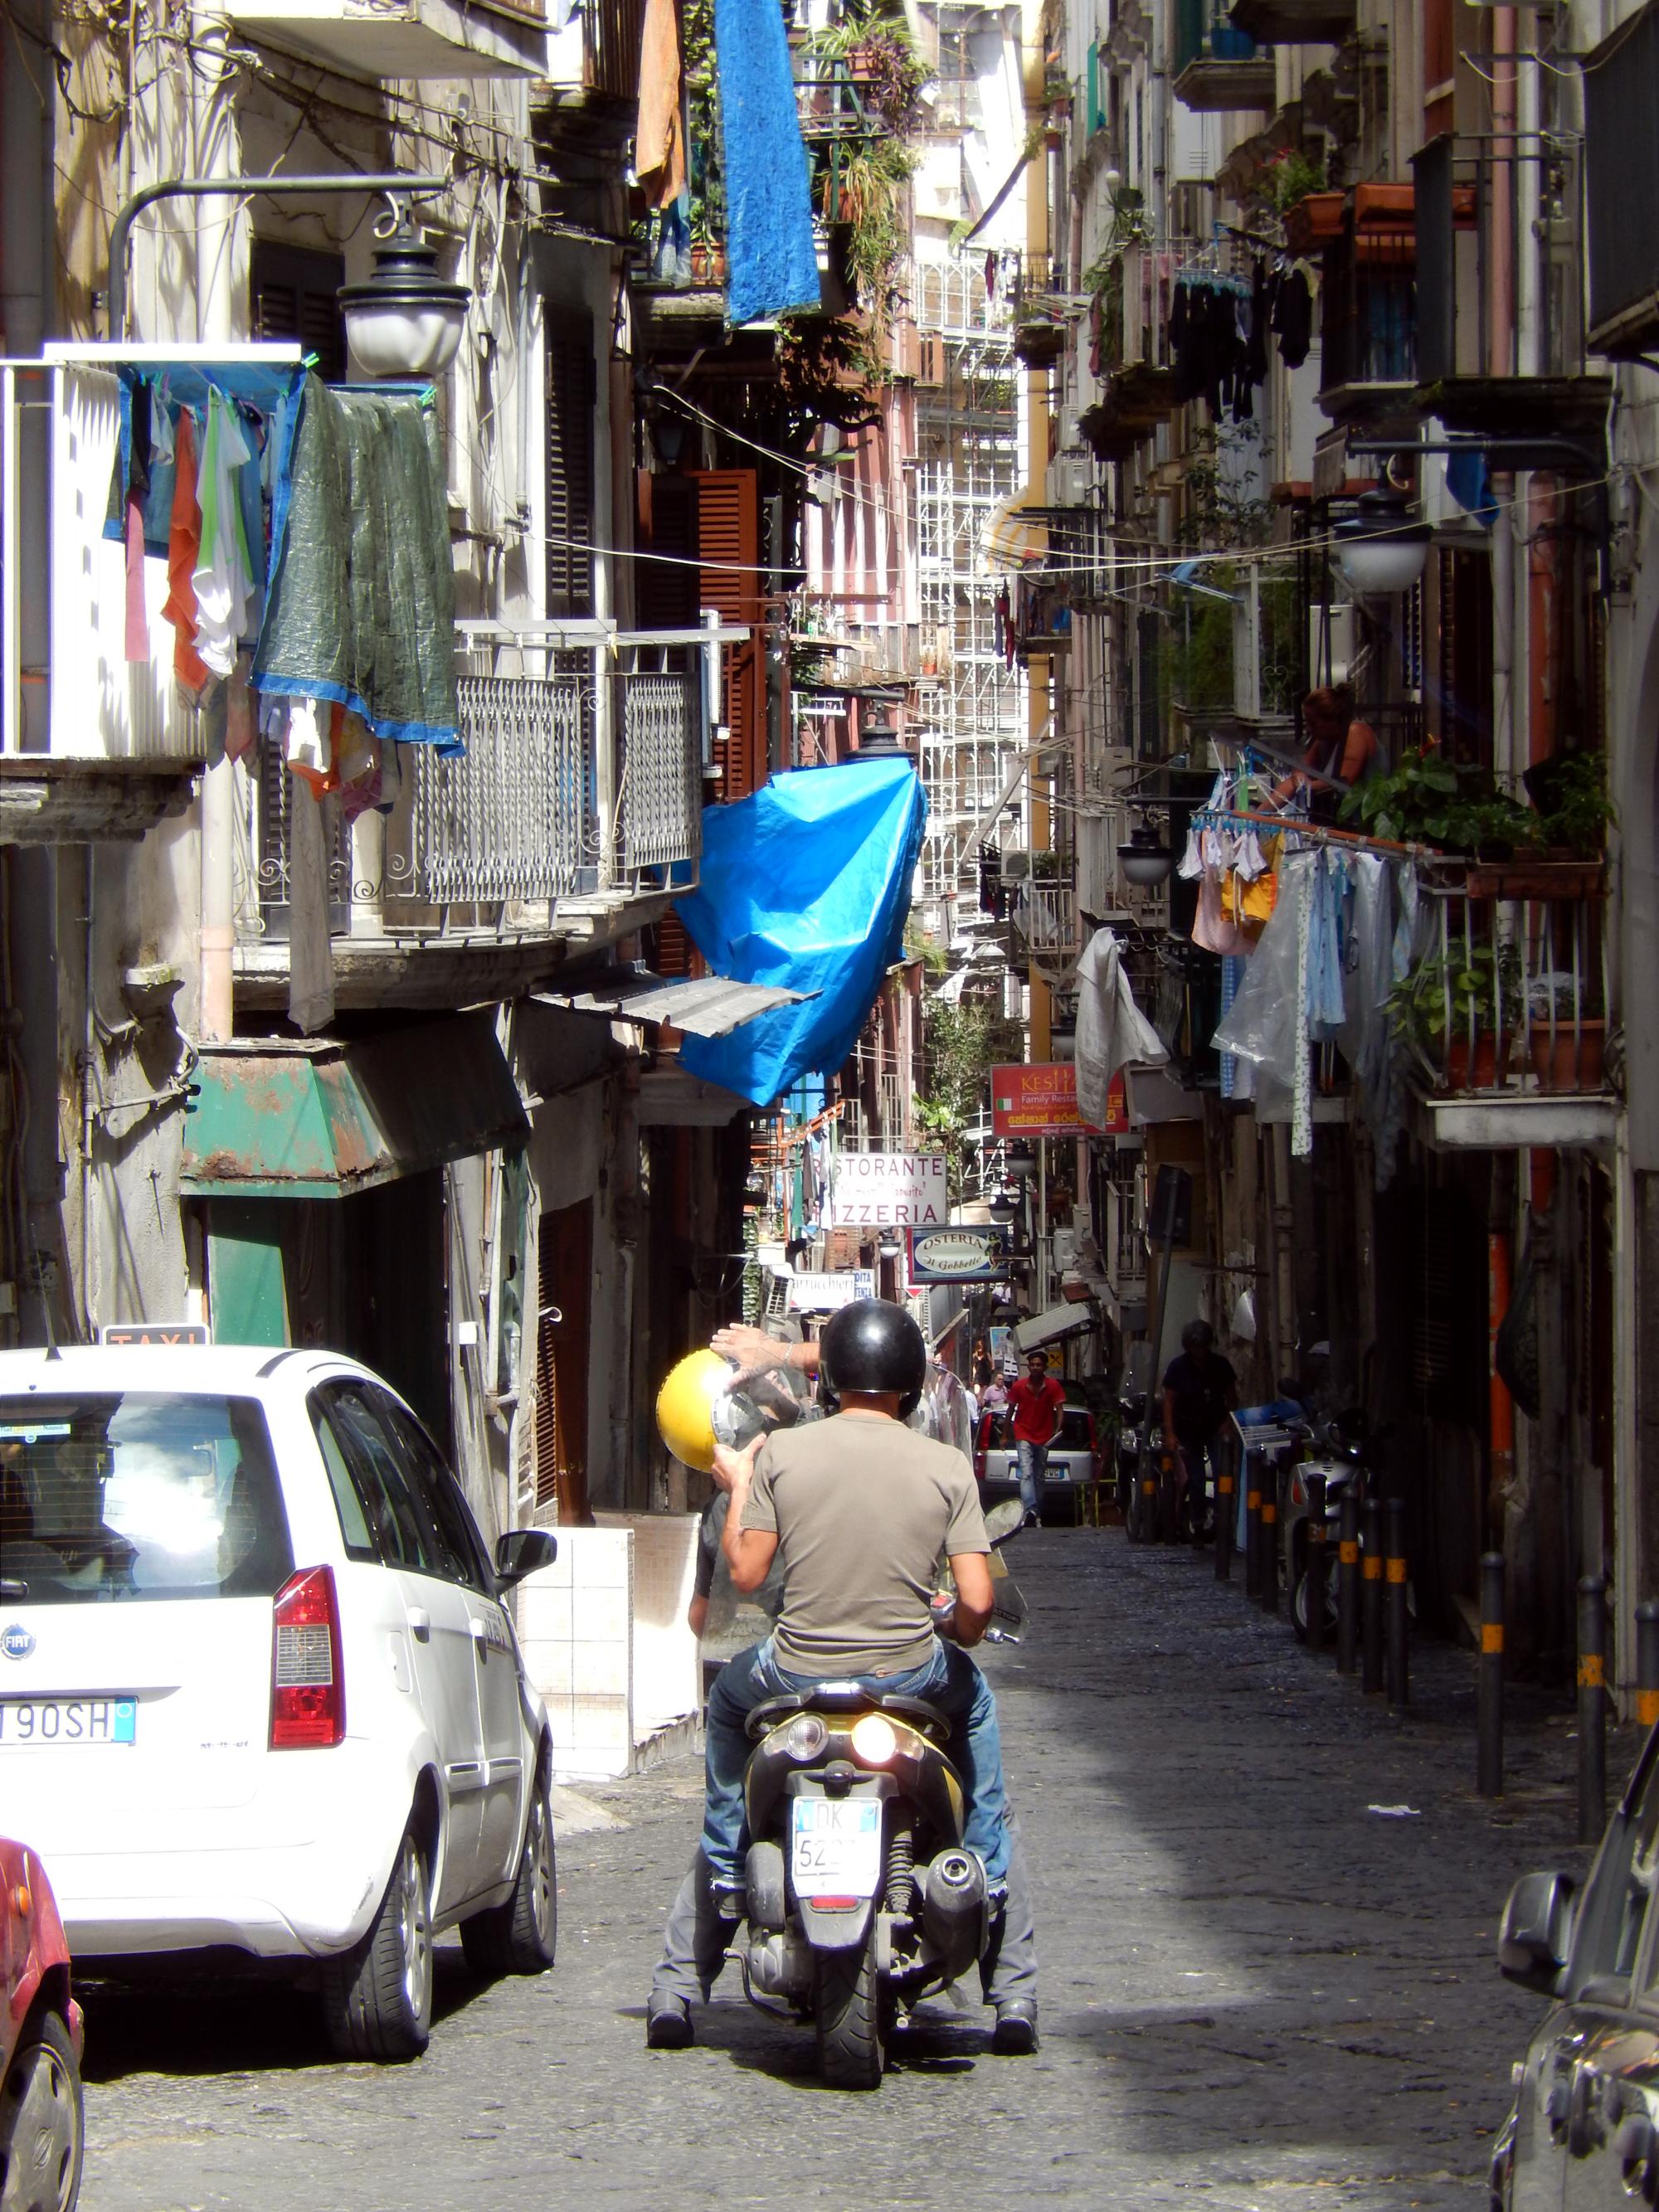 Italy - Narrow Streets #2